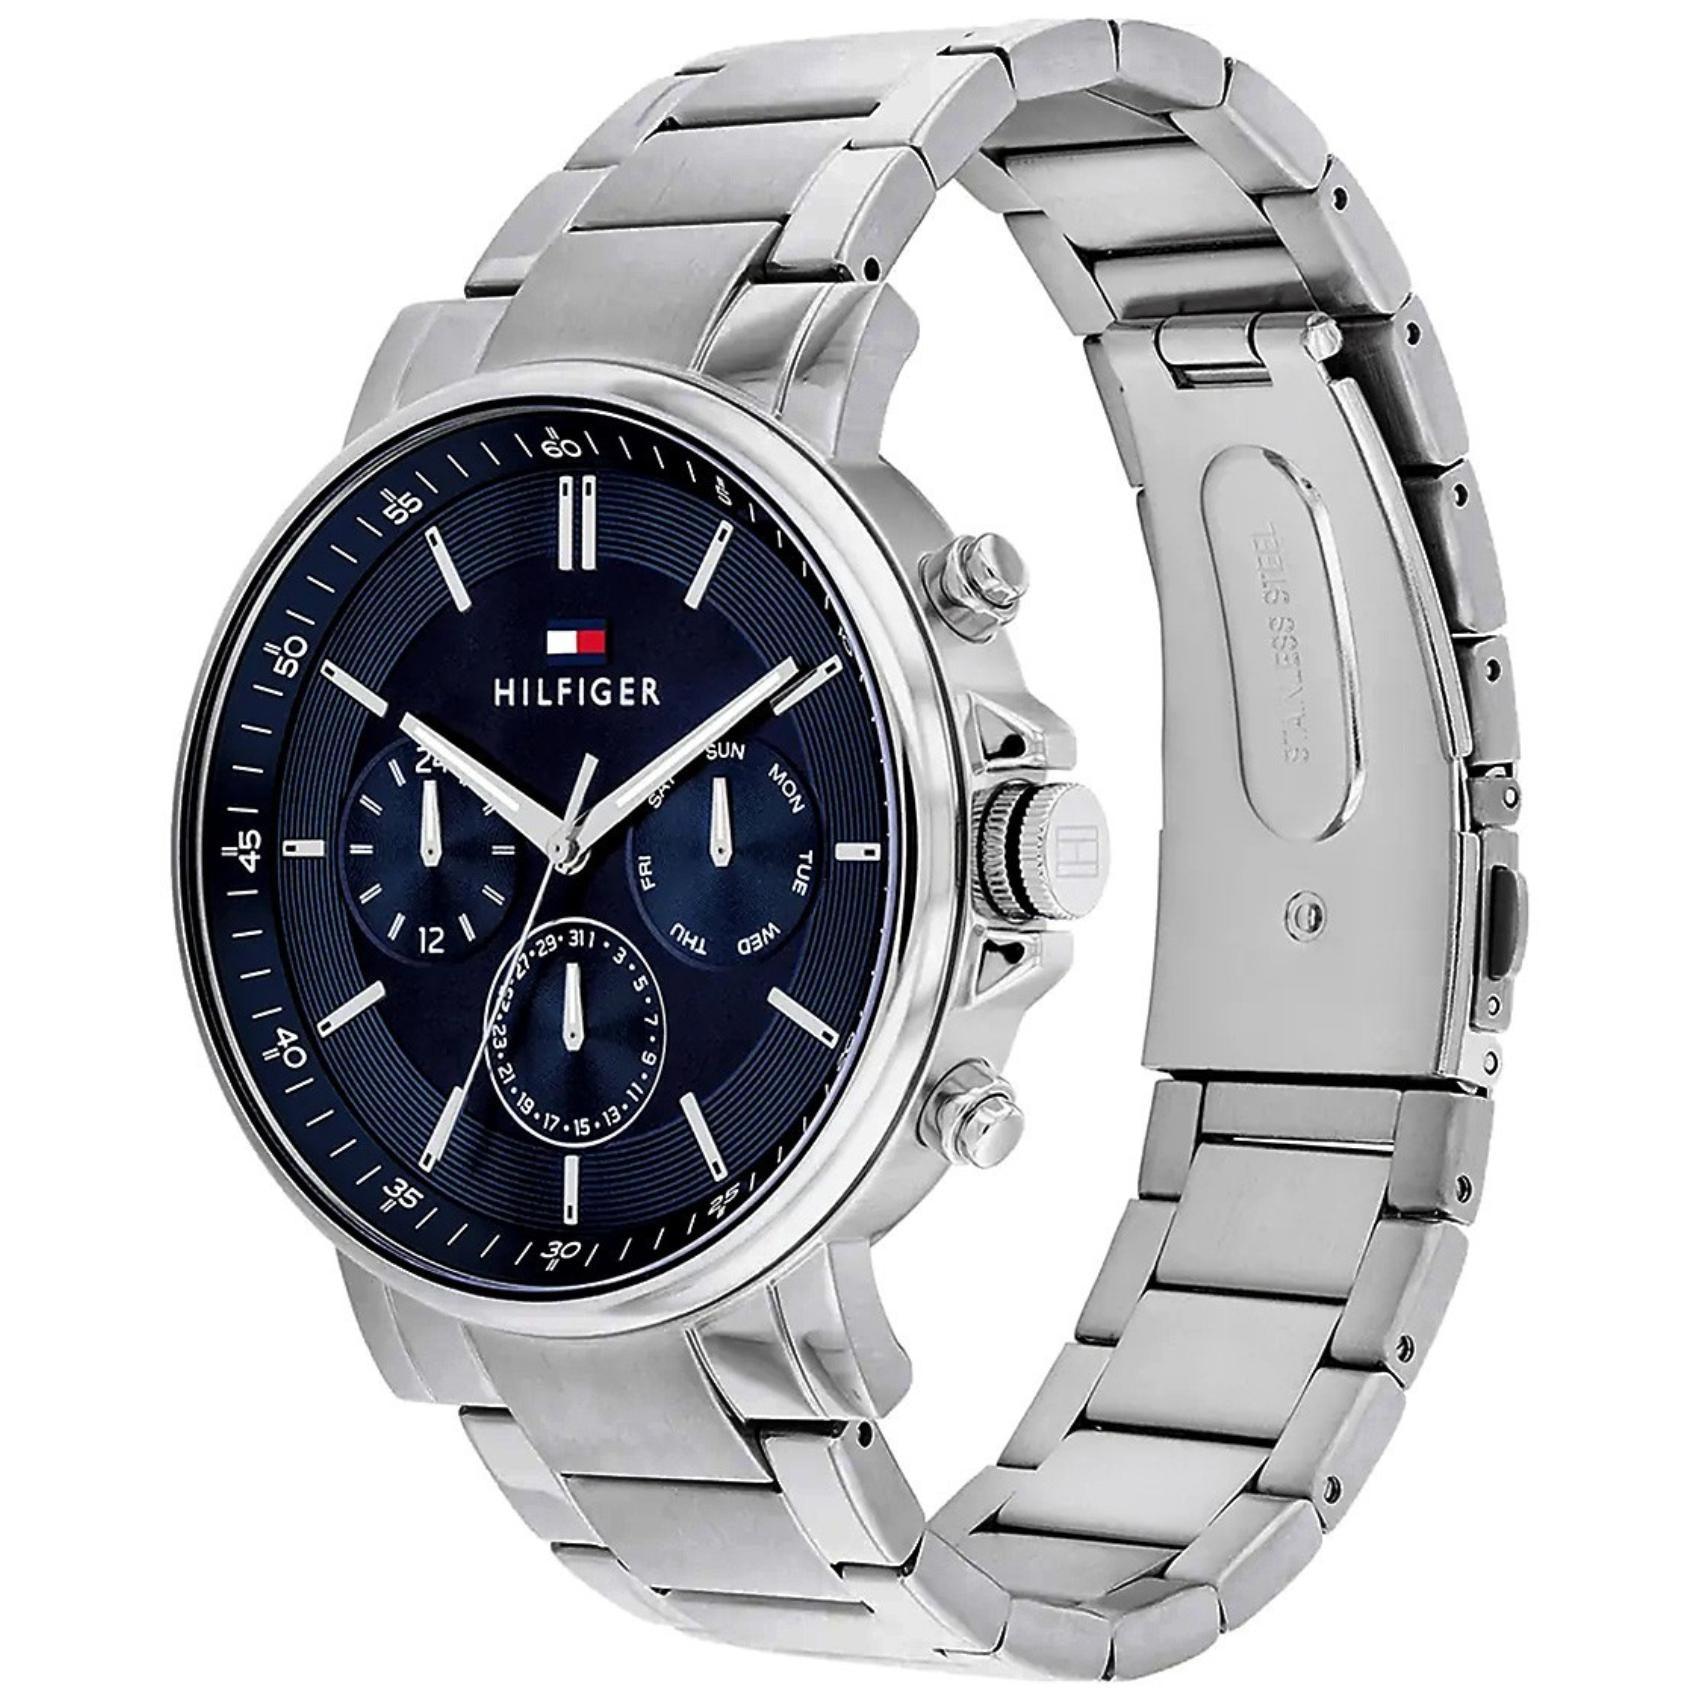 Ανδρικό ρολόι Tommy Hilfiger Tyson 1710588 με ασημί ατσάλινο μπρασελέ και μπλε καντράν διαμέτρου 44mm με ημερομηνία-ημέρα.